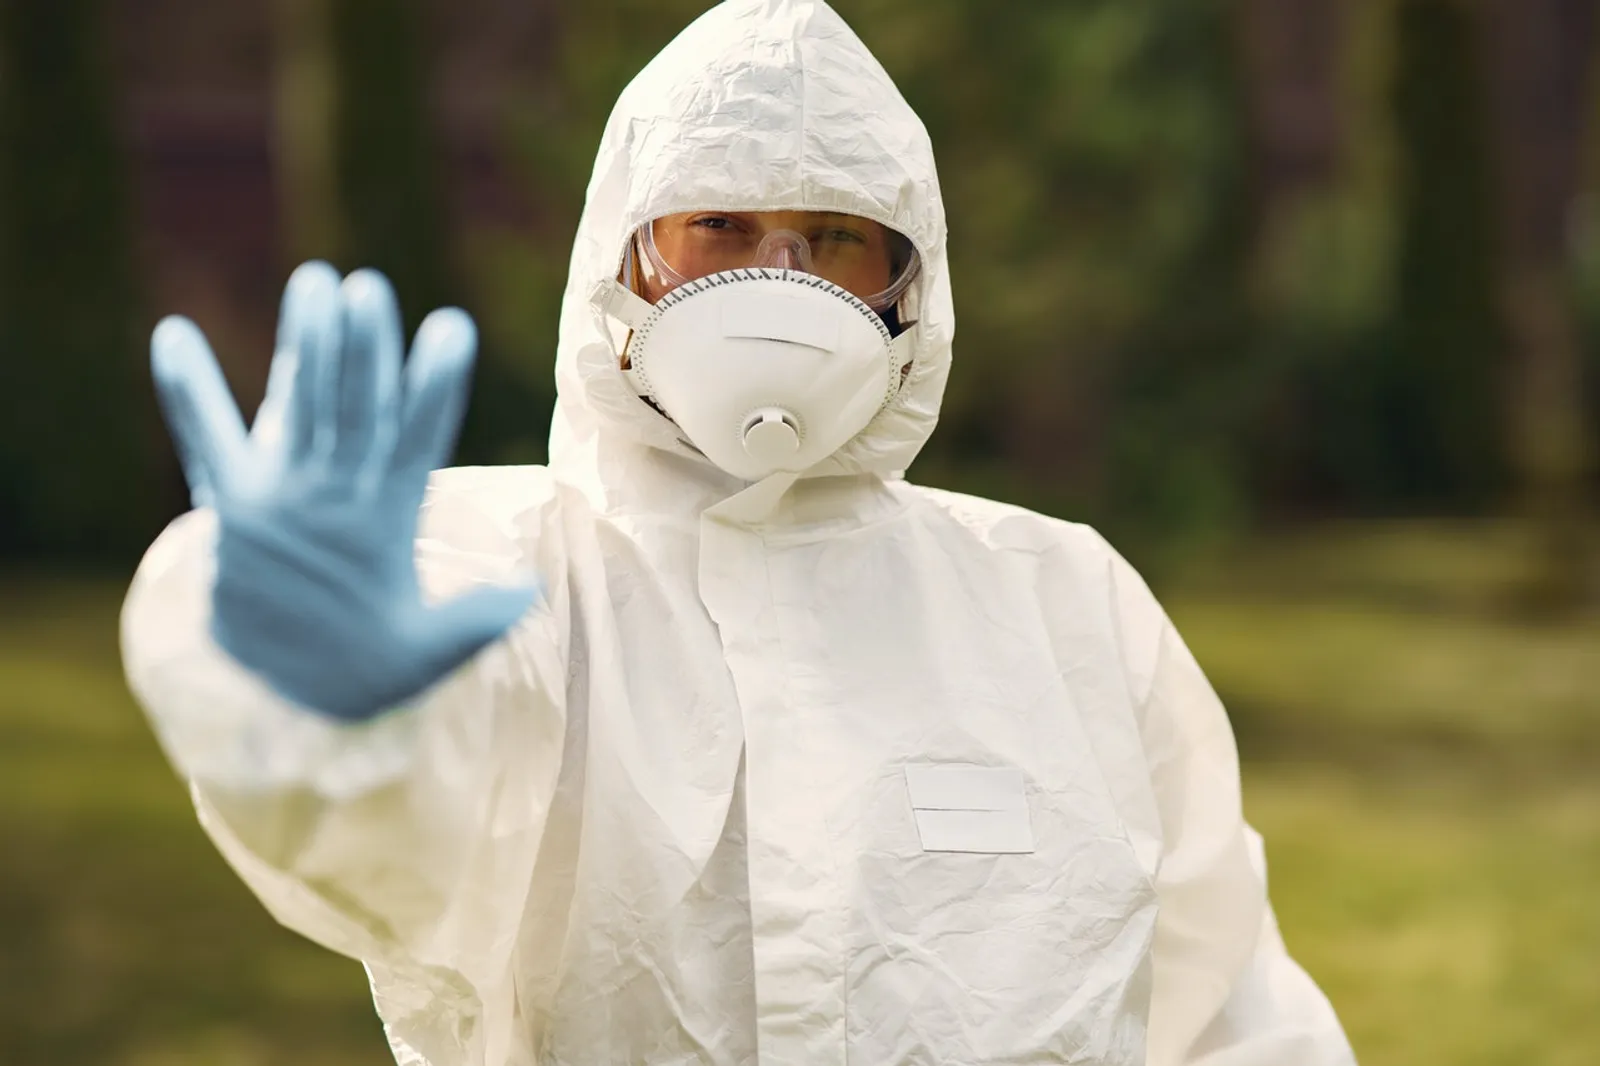 8 Kebaikan yang Bisa Kamu Lakukan Untuk Sesama Saat Pandemi Corona